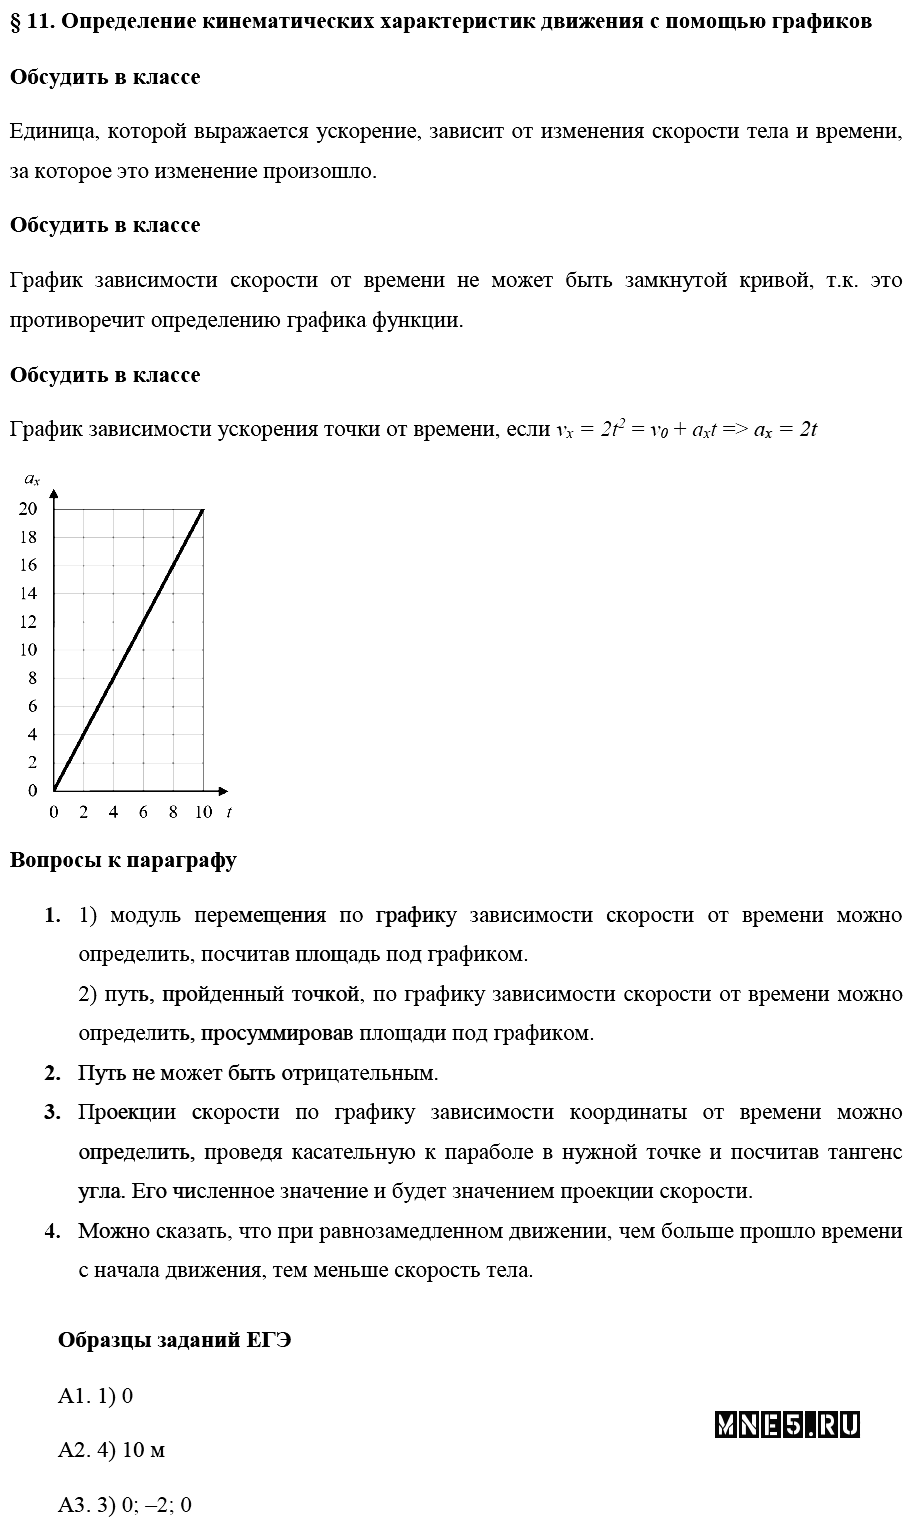 ГДЗ Физика 10 класс - §11. Определение кинематических характеристик движения с помощью графиков